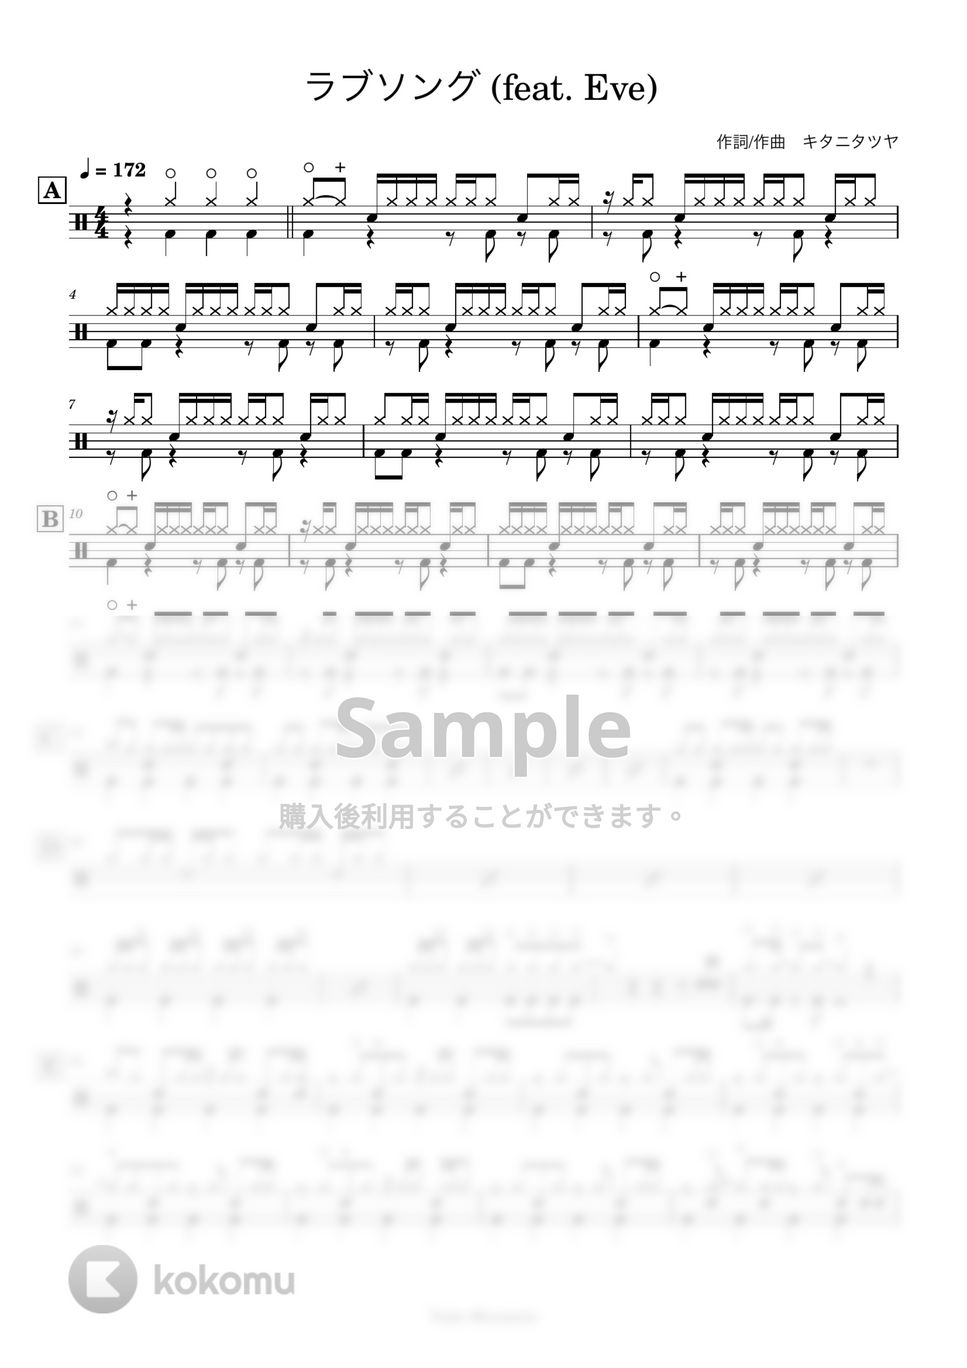 キタニタツヤ - 【ドラム譜】ラブソング(feat. Eve)【完コピ】 by Taiki Mizumoto